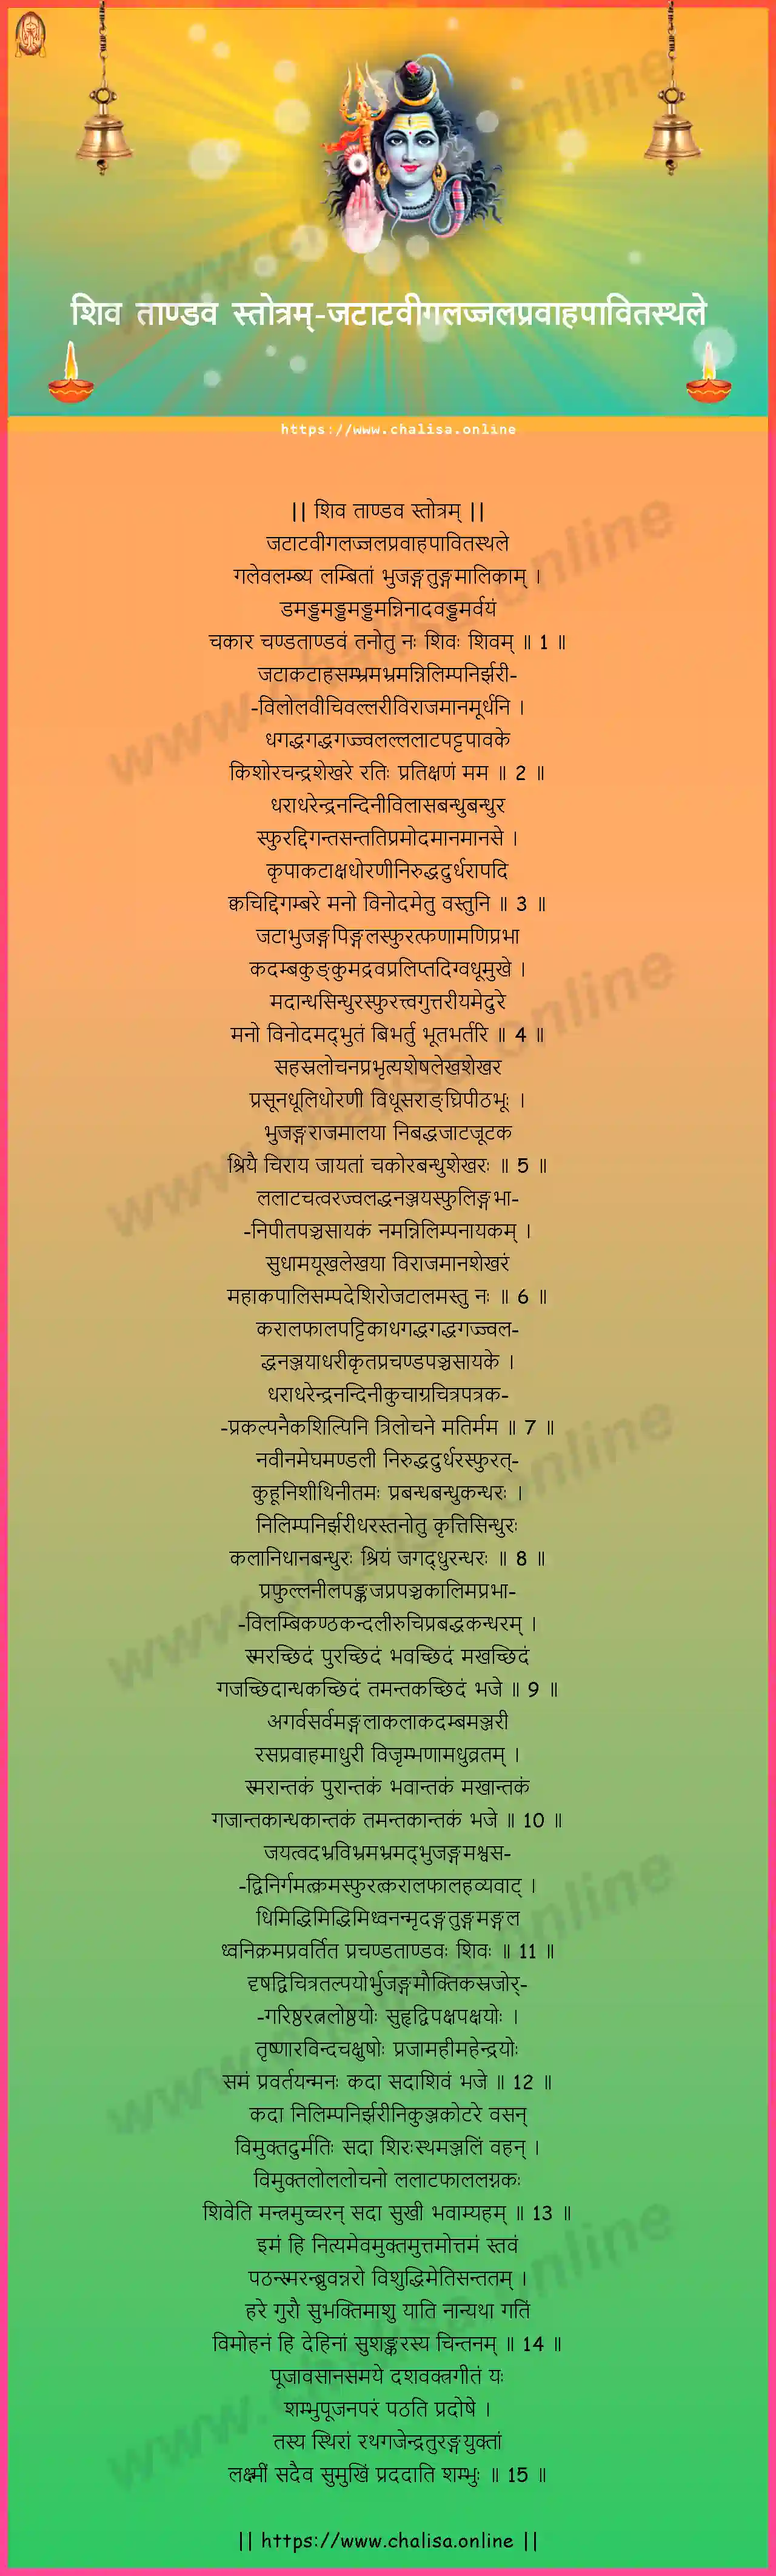 jatatavigalajjalapravahapavitasthale-shiva-tandava-stotram-sanskrit-sanskrit-lyrics-download